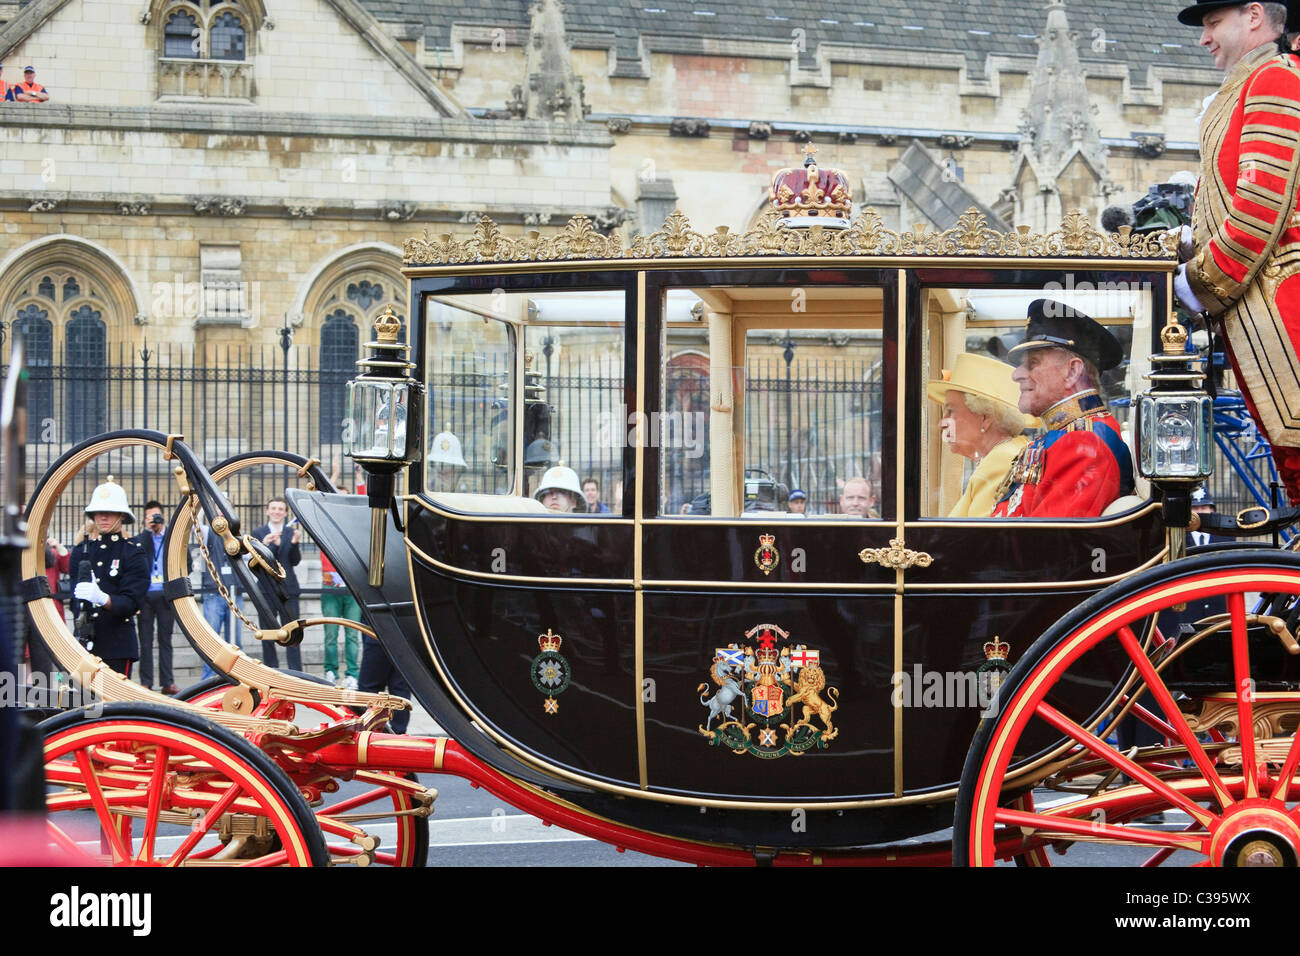 La reina Isabel II y el príncipe Felipe viajan en transporte después de la boda real del príncipe Guillermo y Kate en 2011. Londres, Inglaterra, Reino Unido. Foto de stock